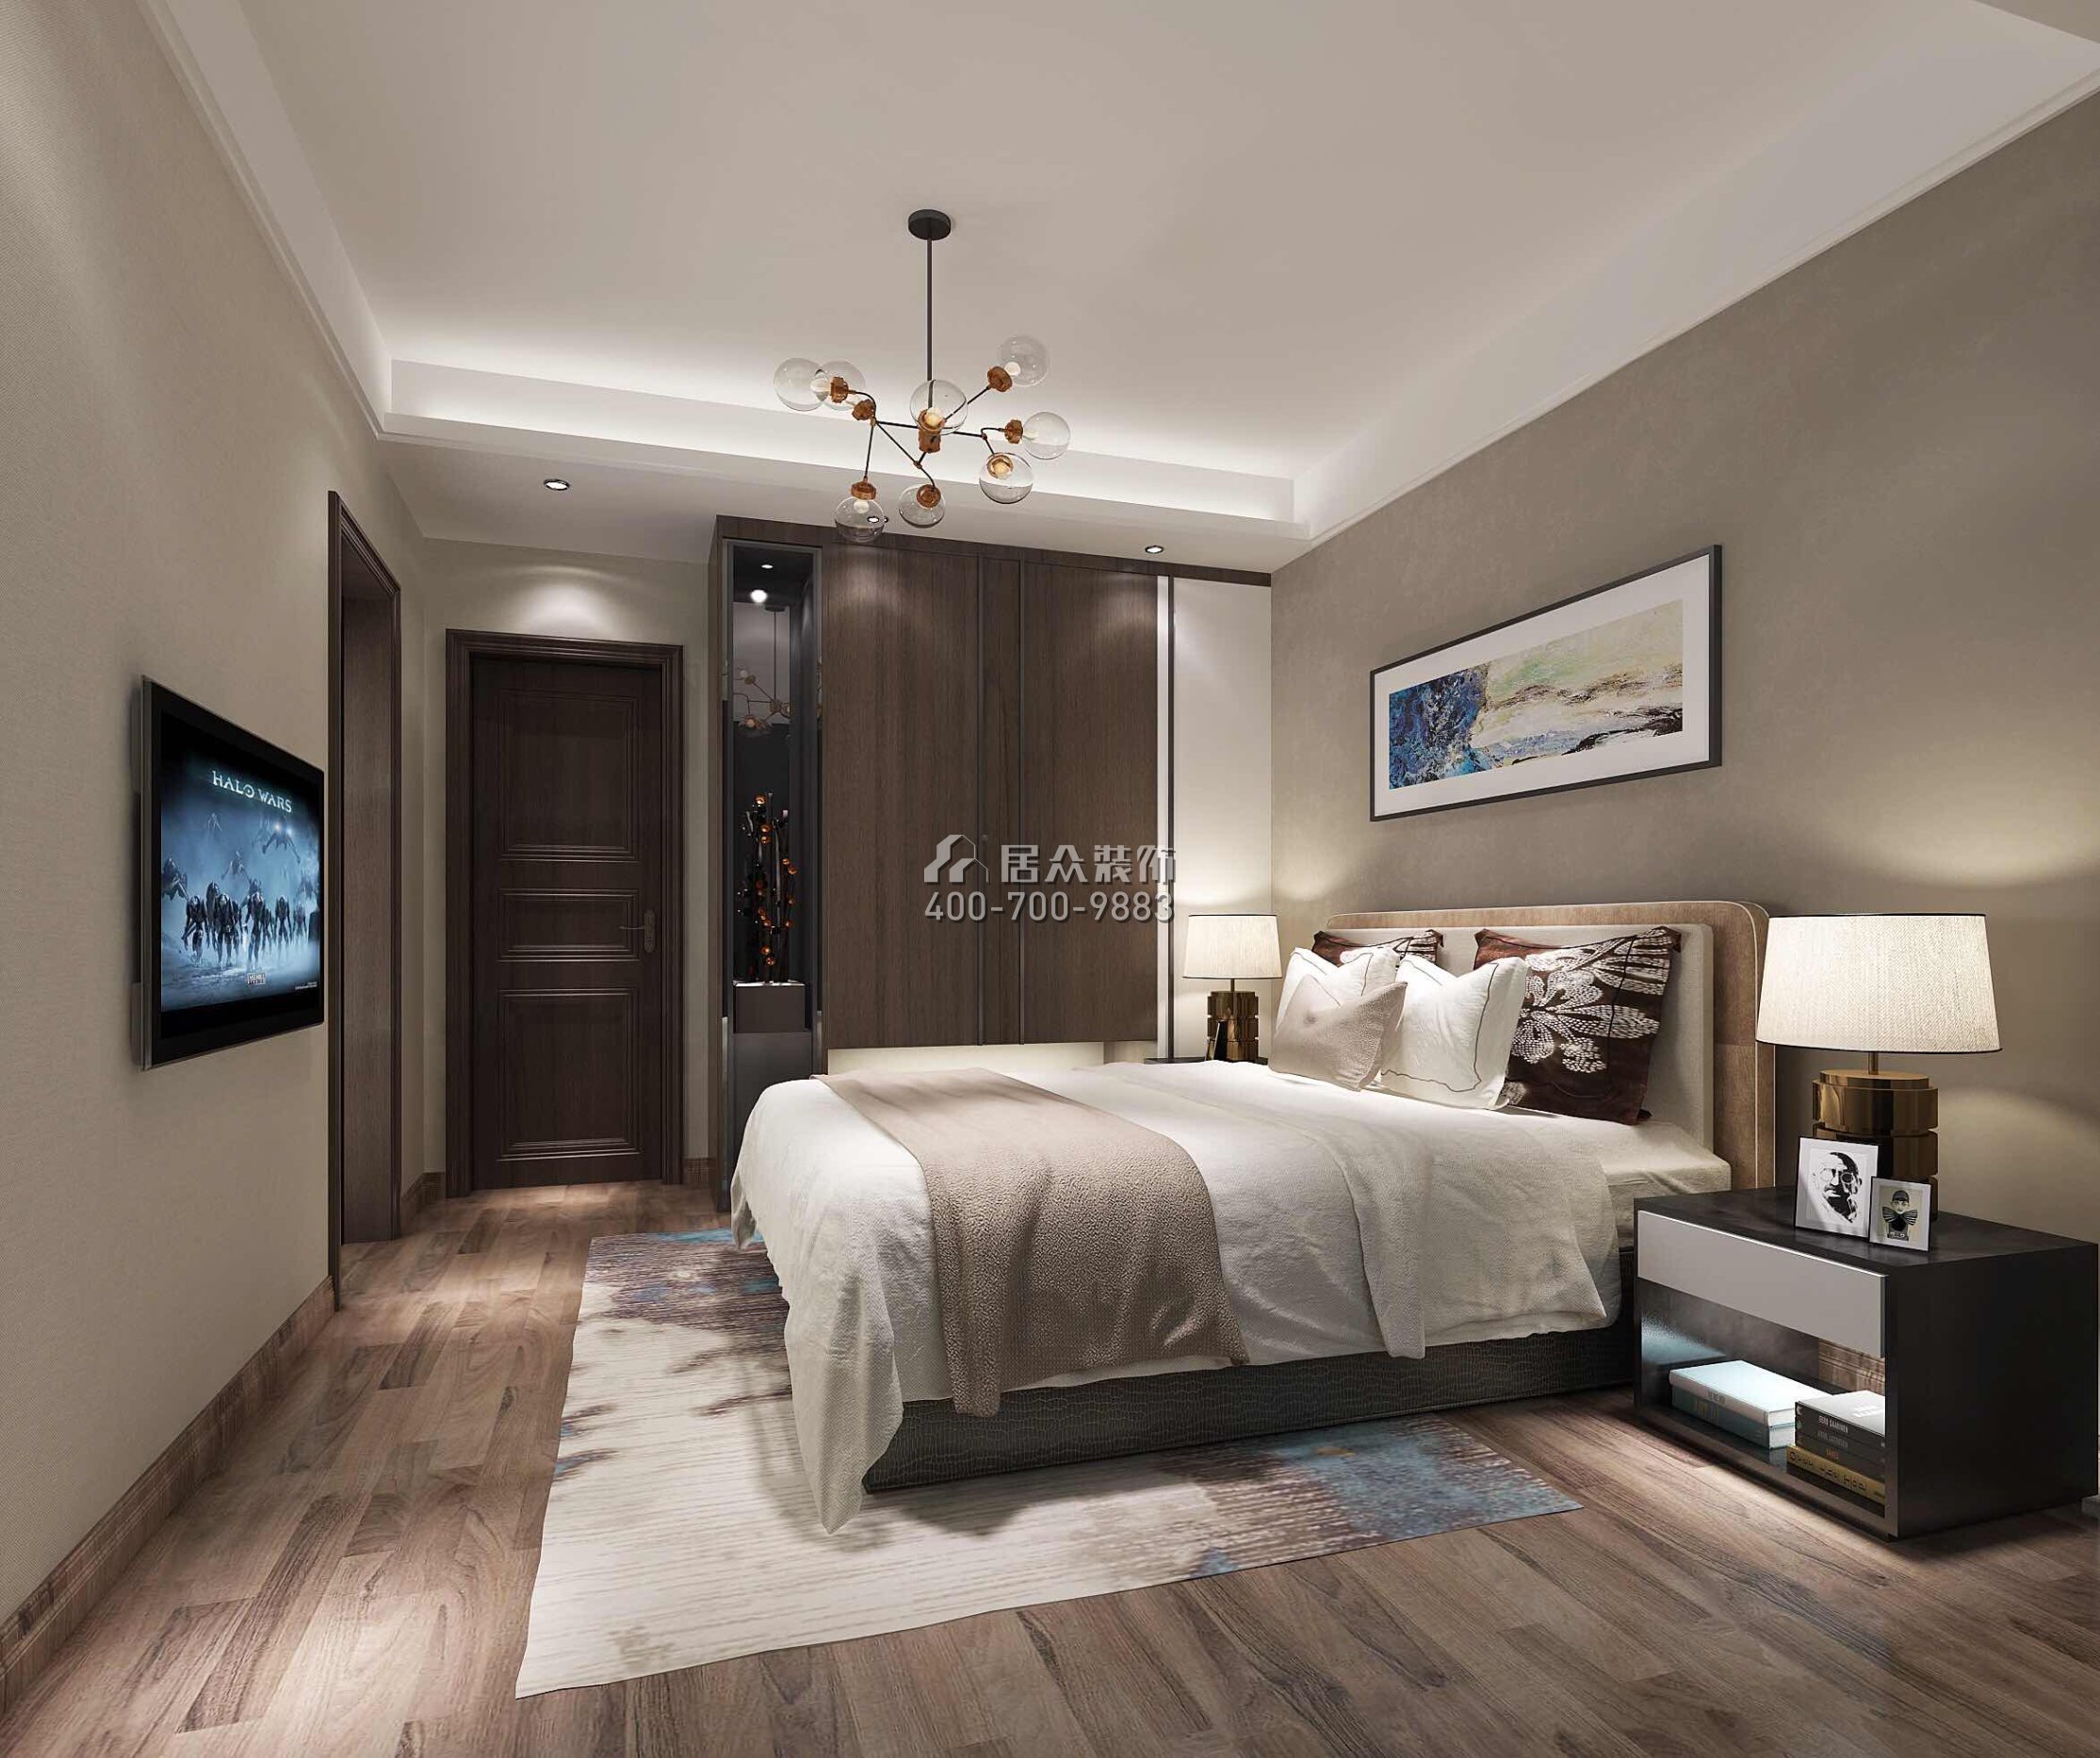 譽江華府450平方米現代簡約風格復式戶型臥室裝修效果圖